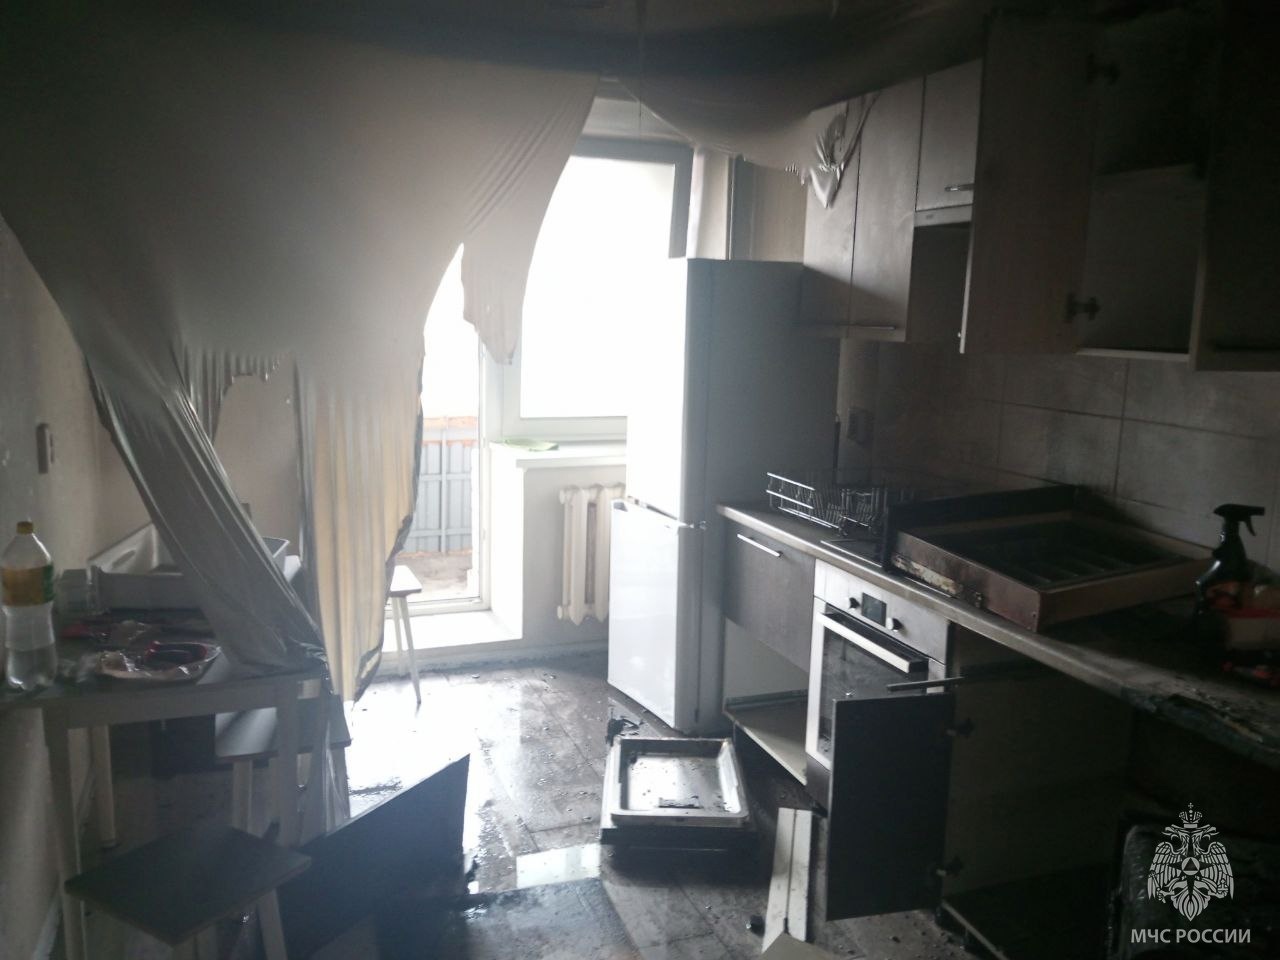 В Кирове неисправная посудомоечная машина стала причиной сильного пожара